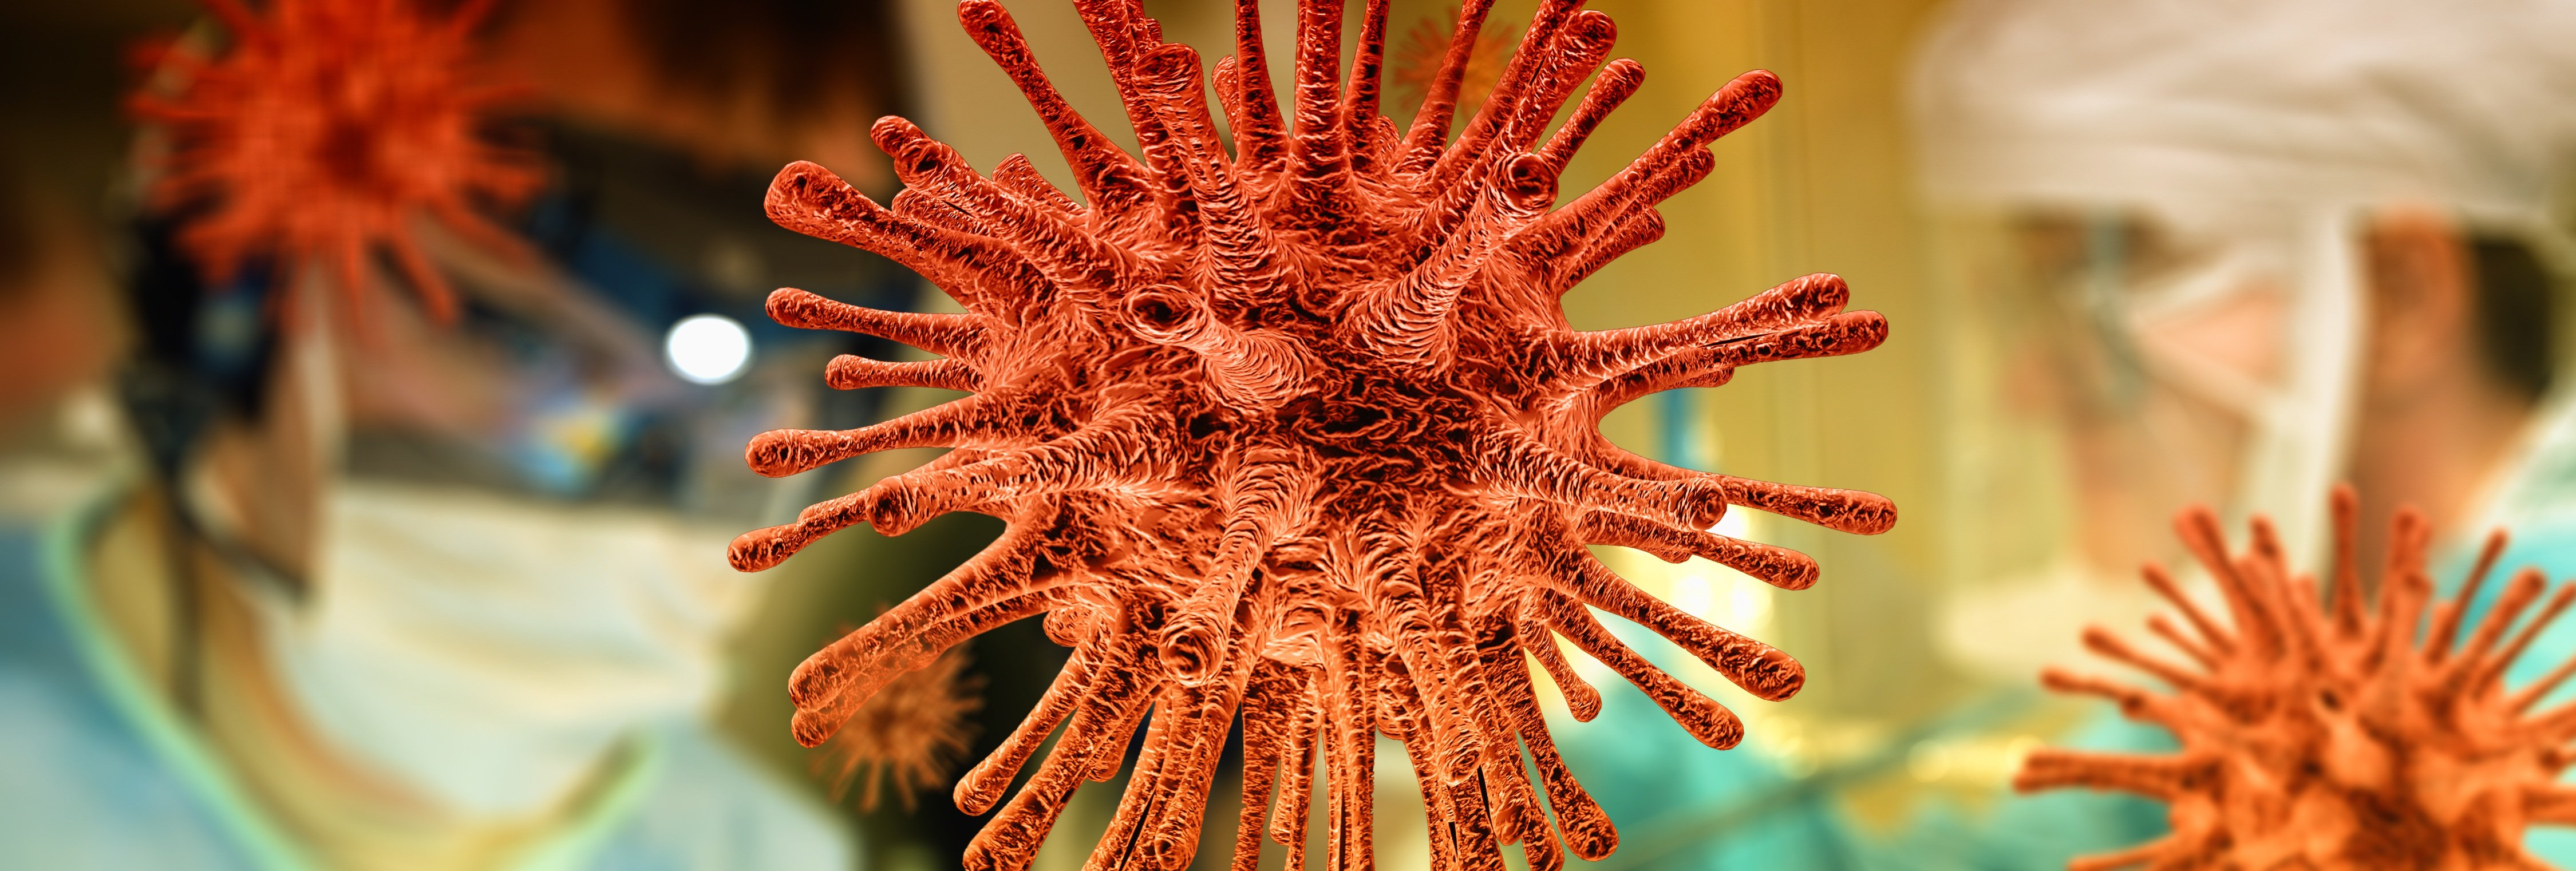 Aturaran les temperatures altes l'expansió del coronavirus?